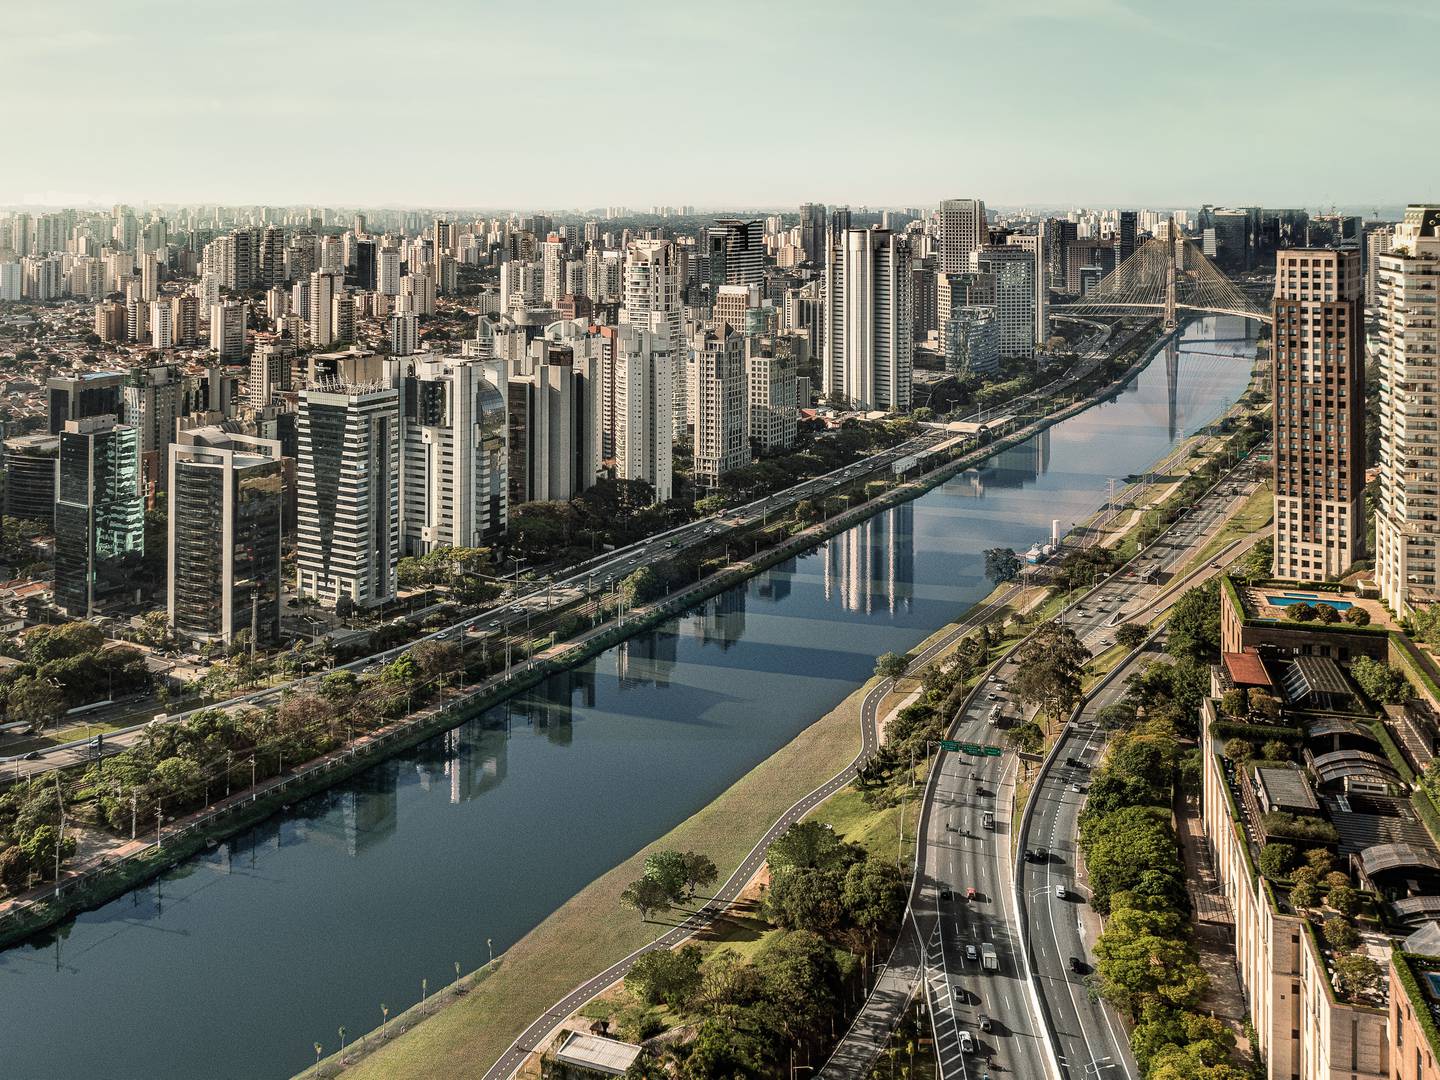 Vista de Reserva Cidade Jardim, proyecto de JHSF, en São Paulo: 50 mil reales pormetro cuadrado y precios de 65 millones de reales por un apartamento